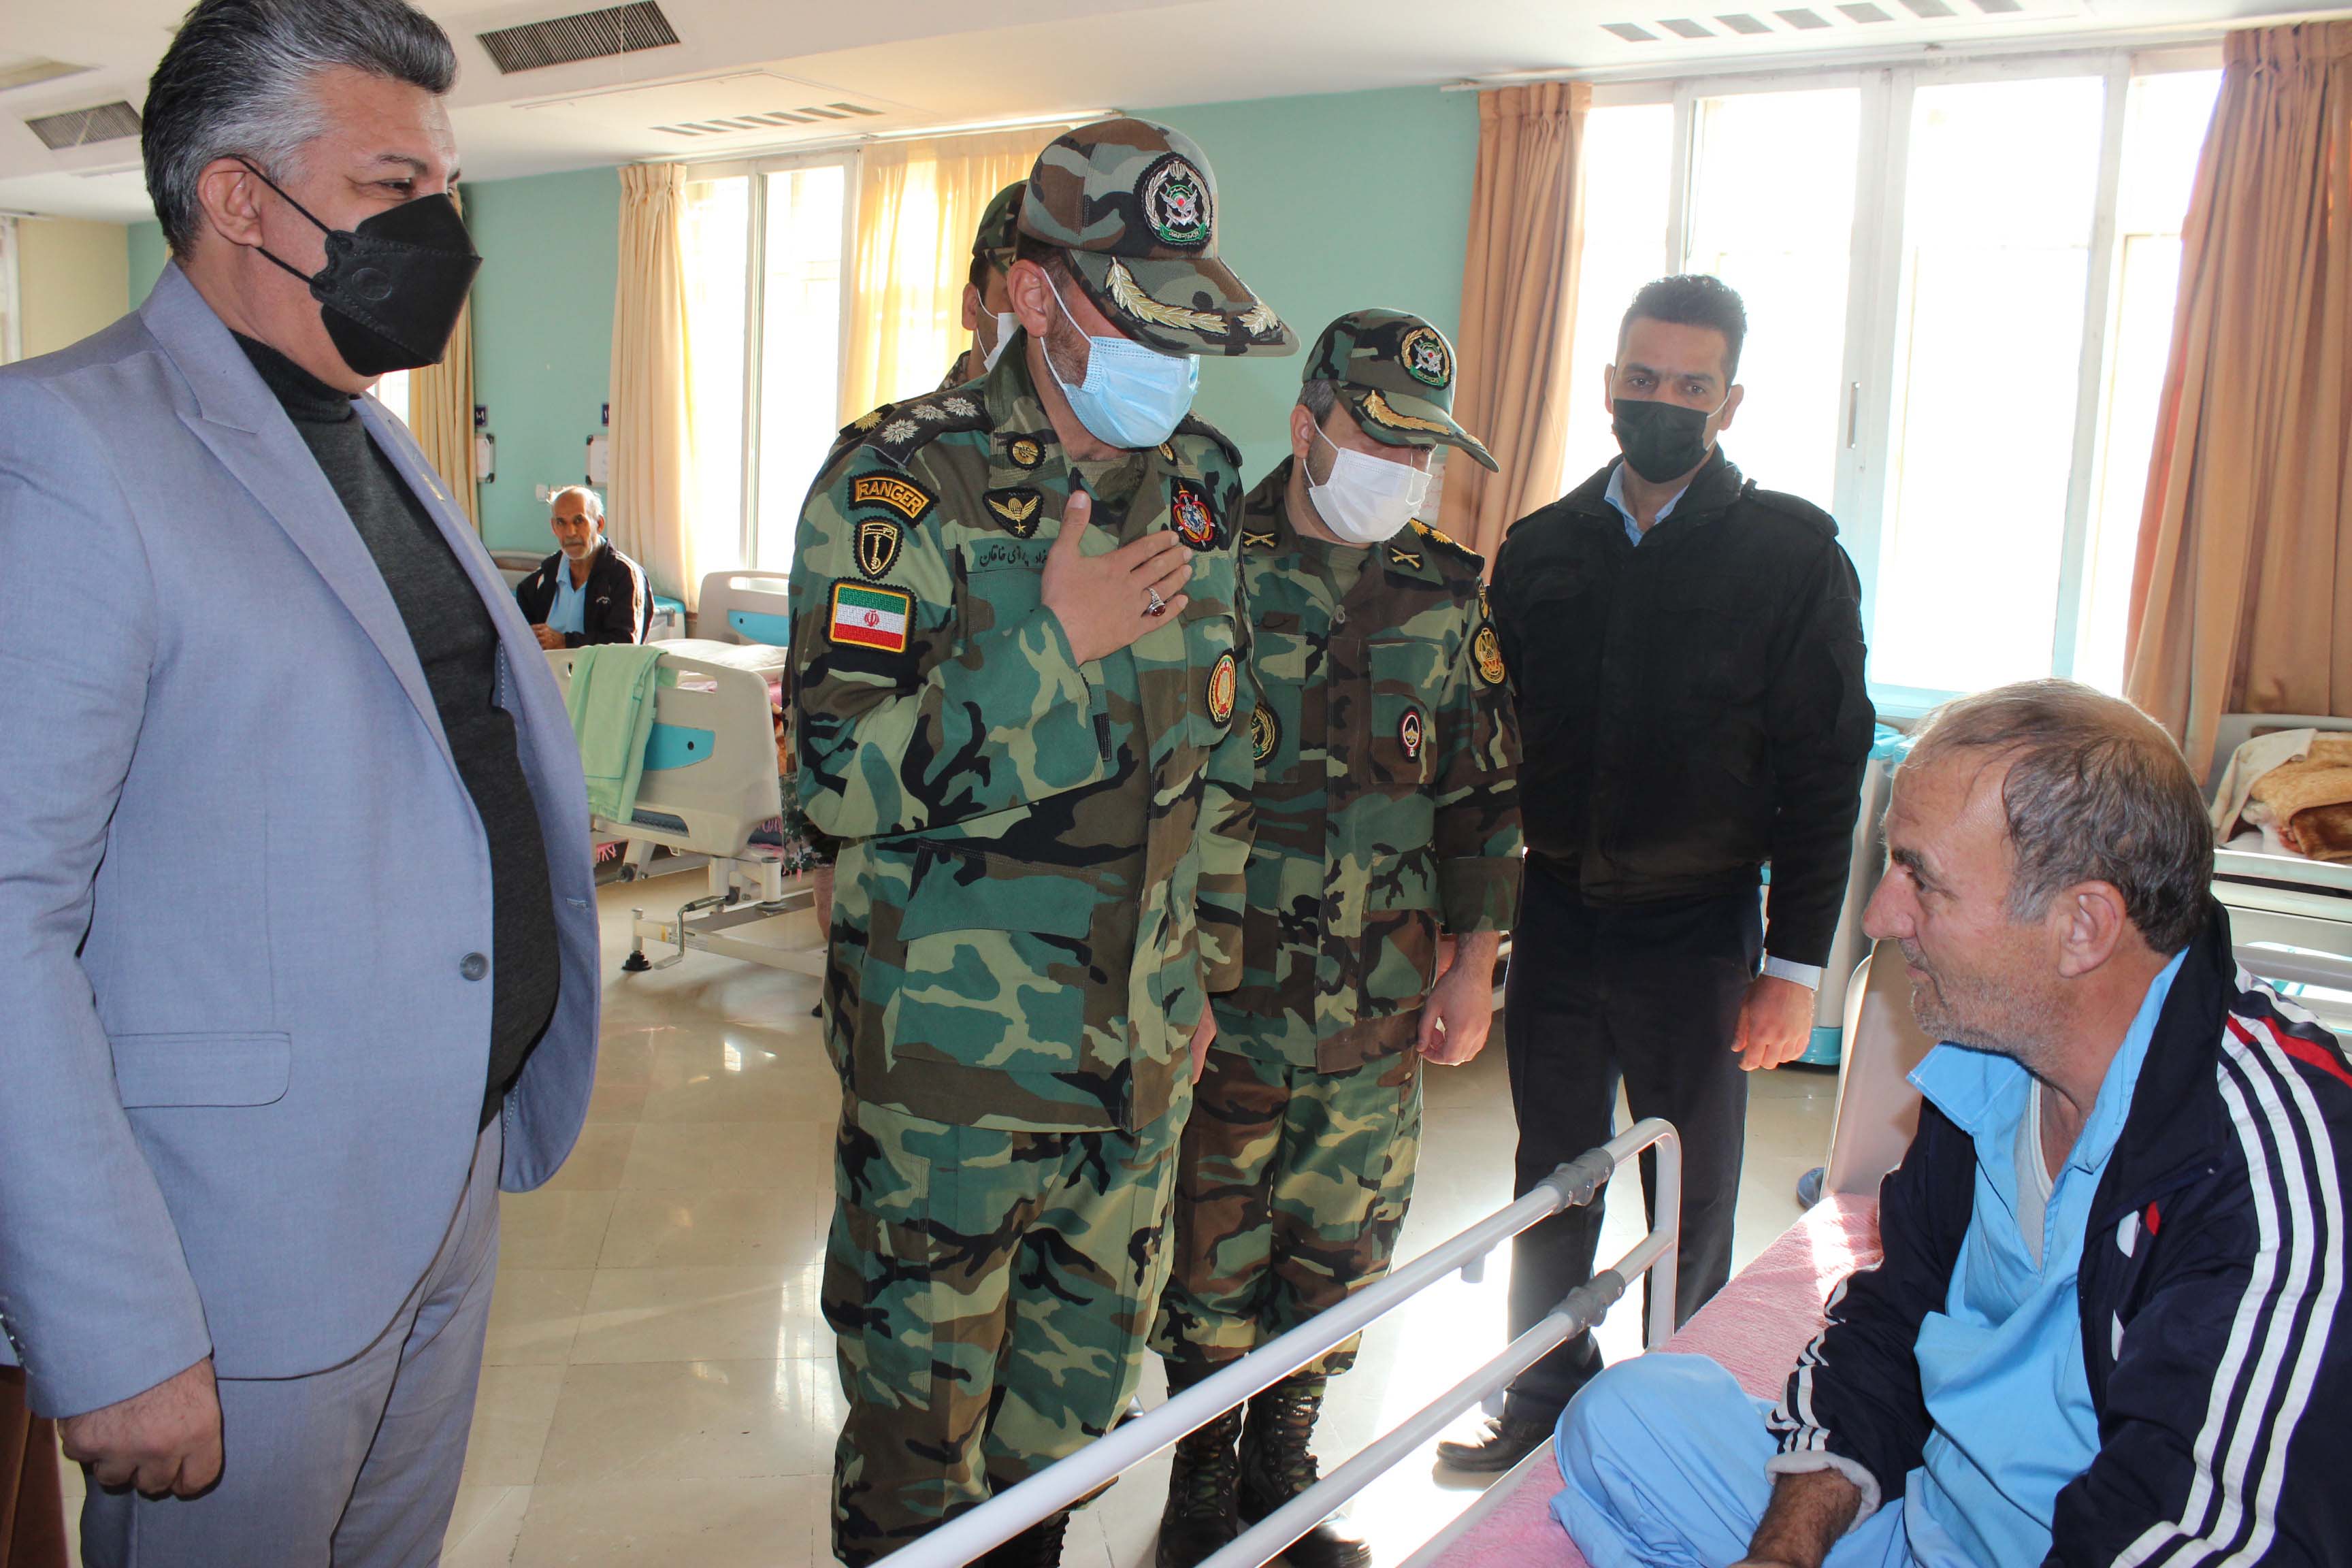 دیدار فرماندهان ارتش با جانبازان بیمارستان میلادشهریار